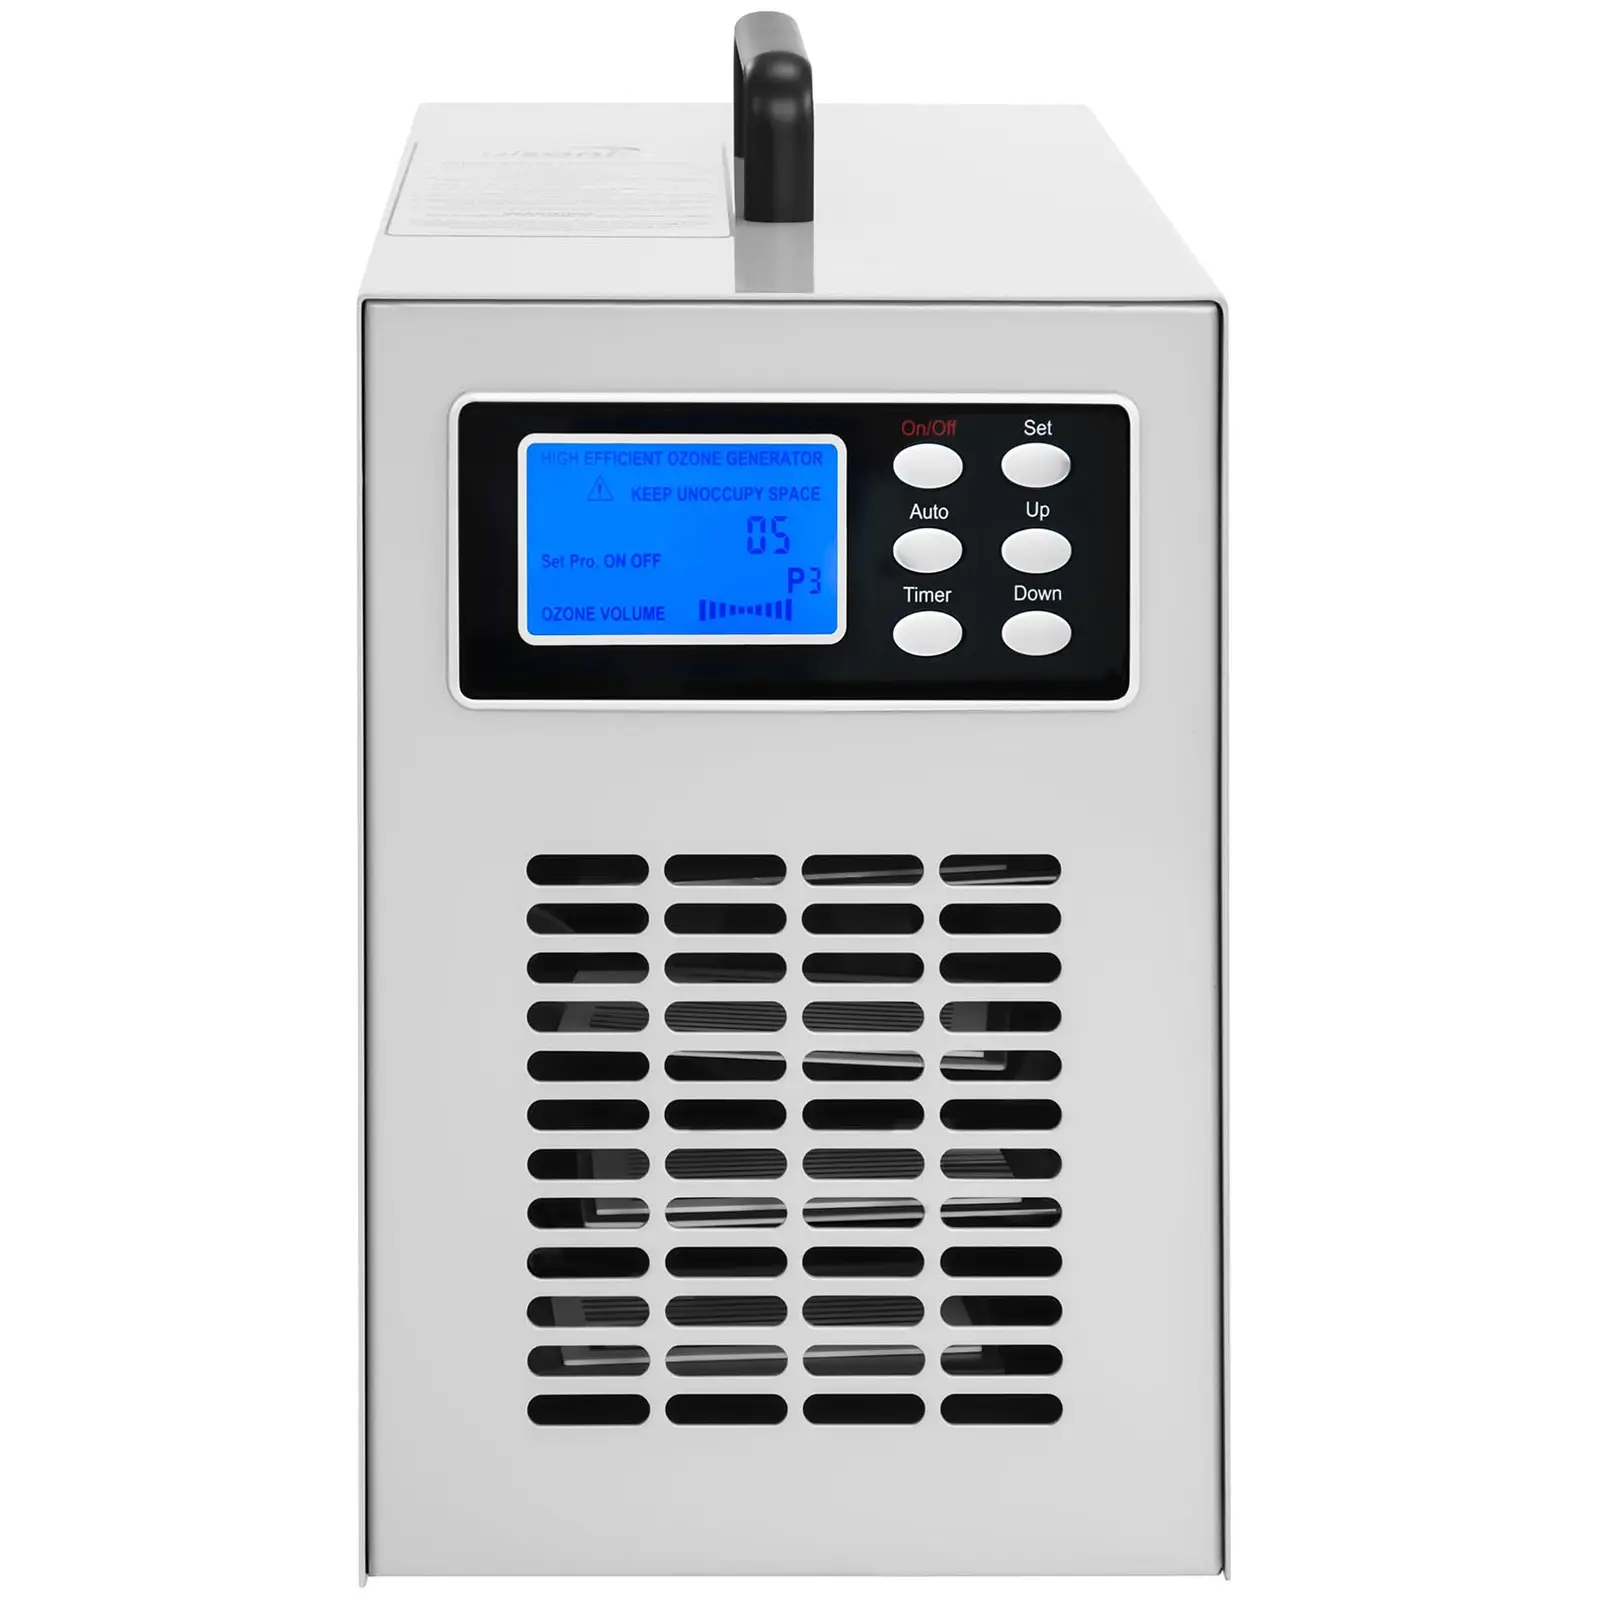 Ozónový generátor - 20 000 mg/h - 205 W - digitálny